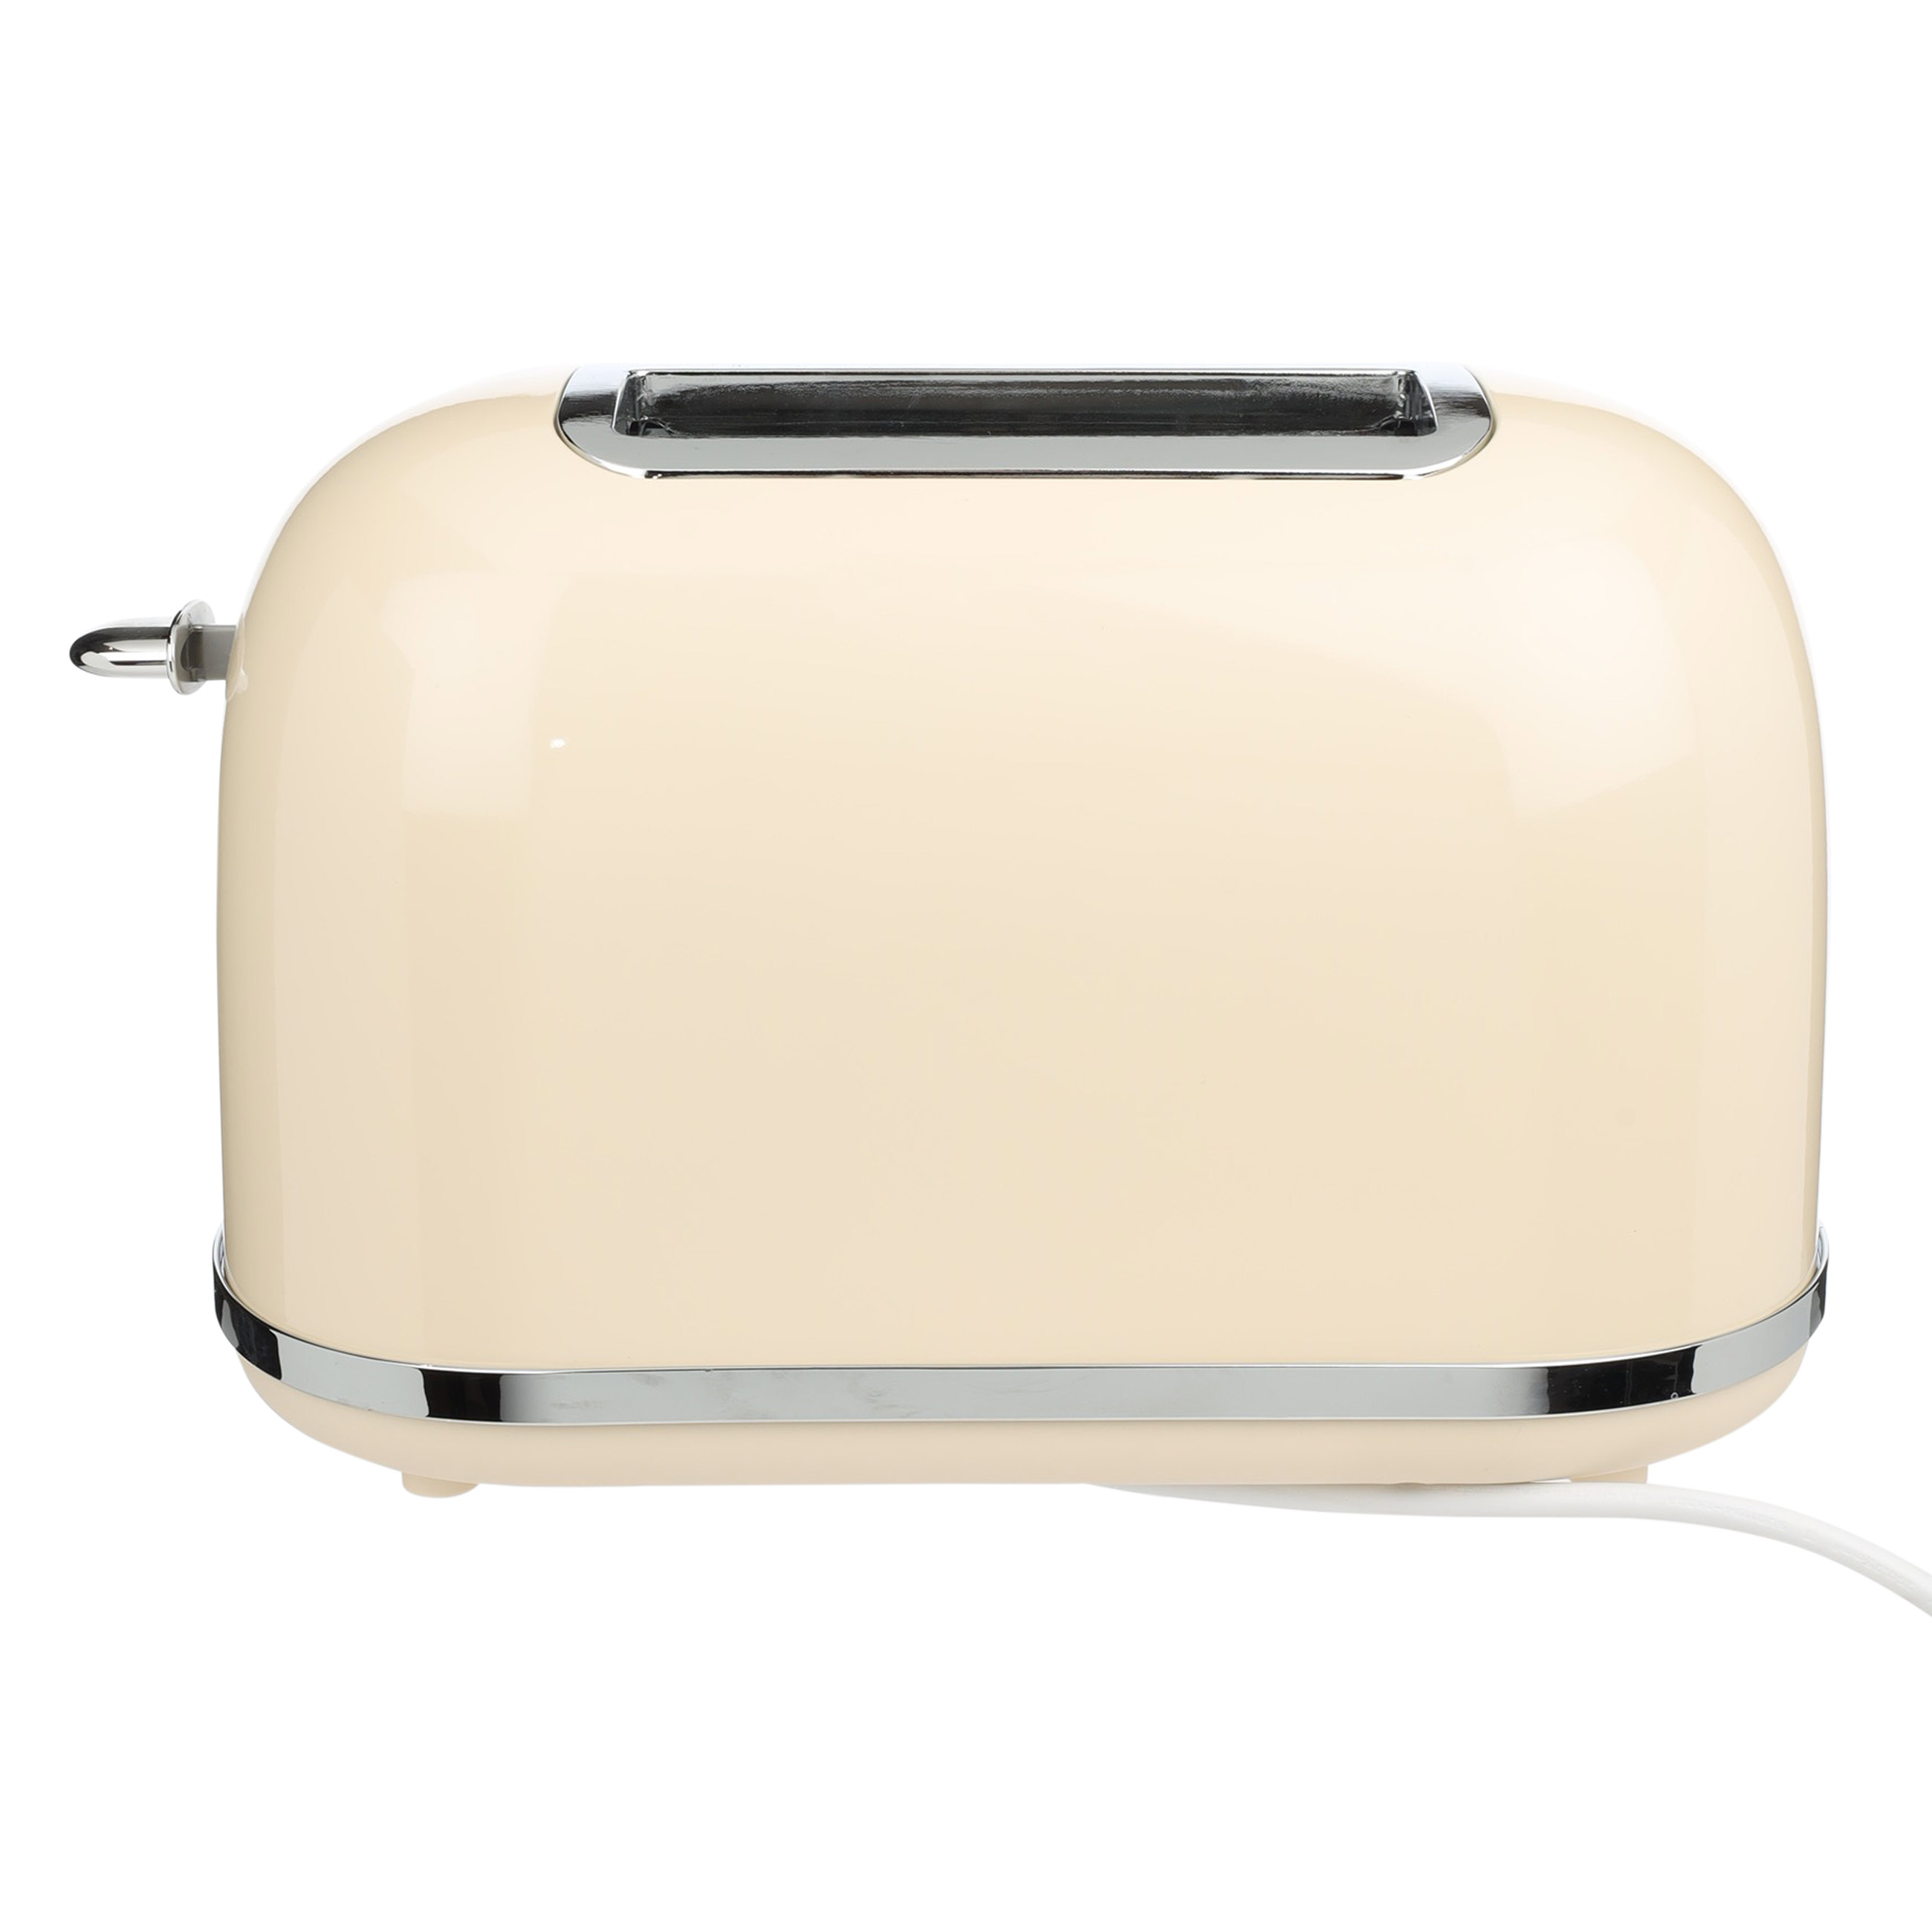 Тостер электрический, 685-815 Вт, 6 режимов, металл/пластик, бежевый, Vintage kitchen изображение № 3